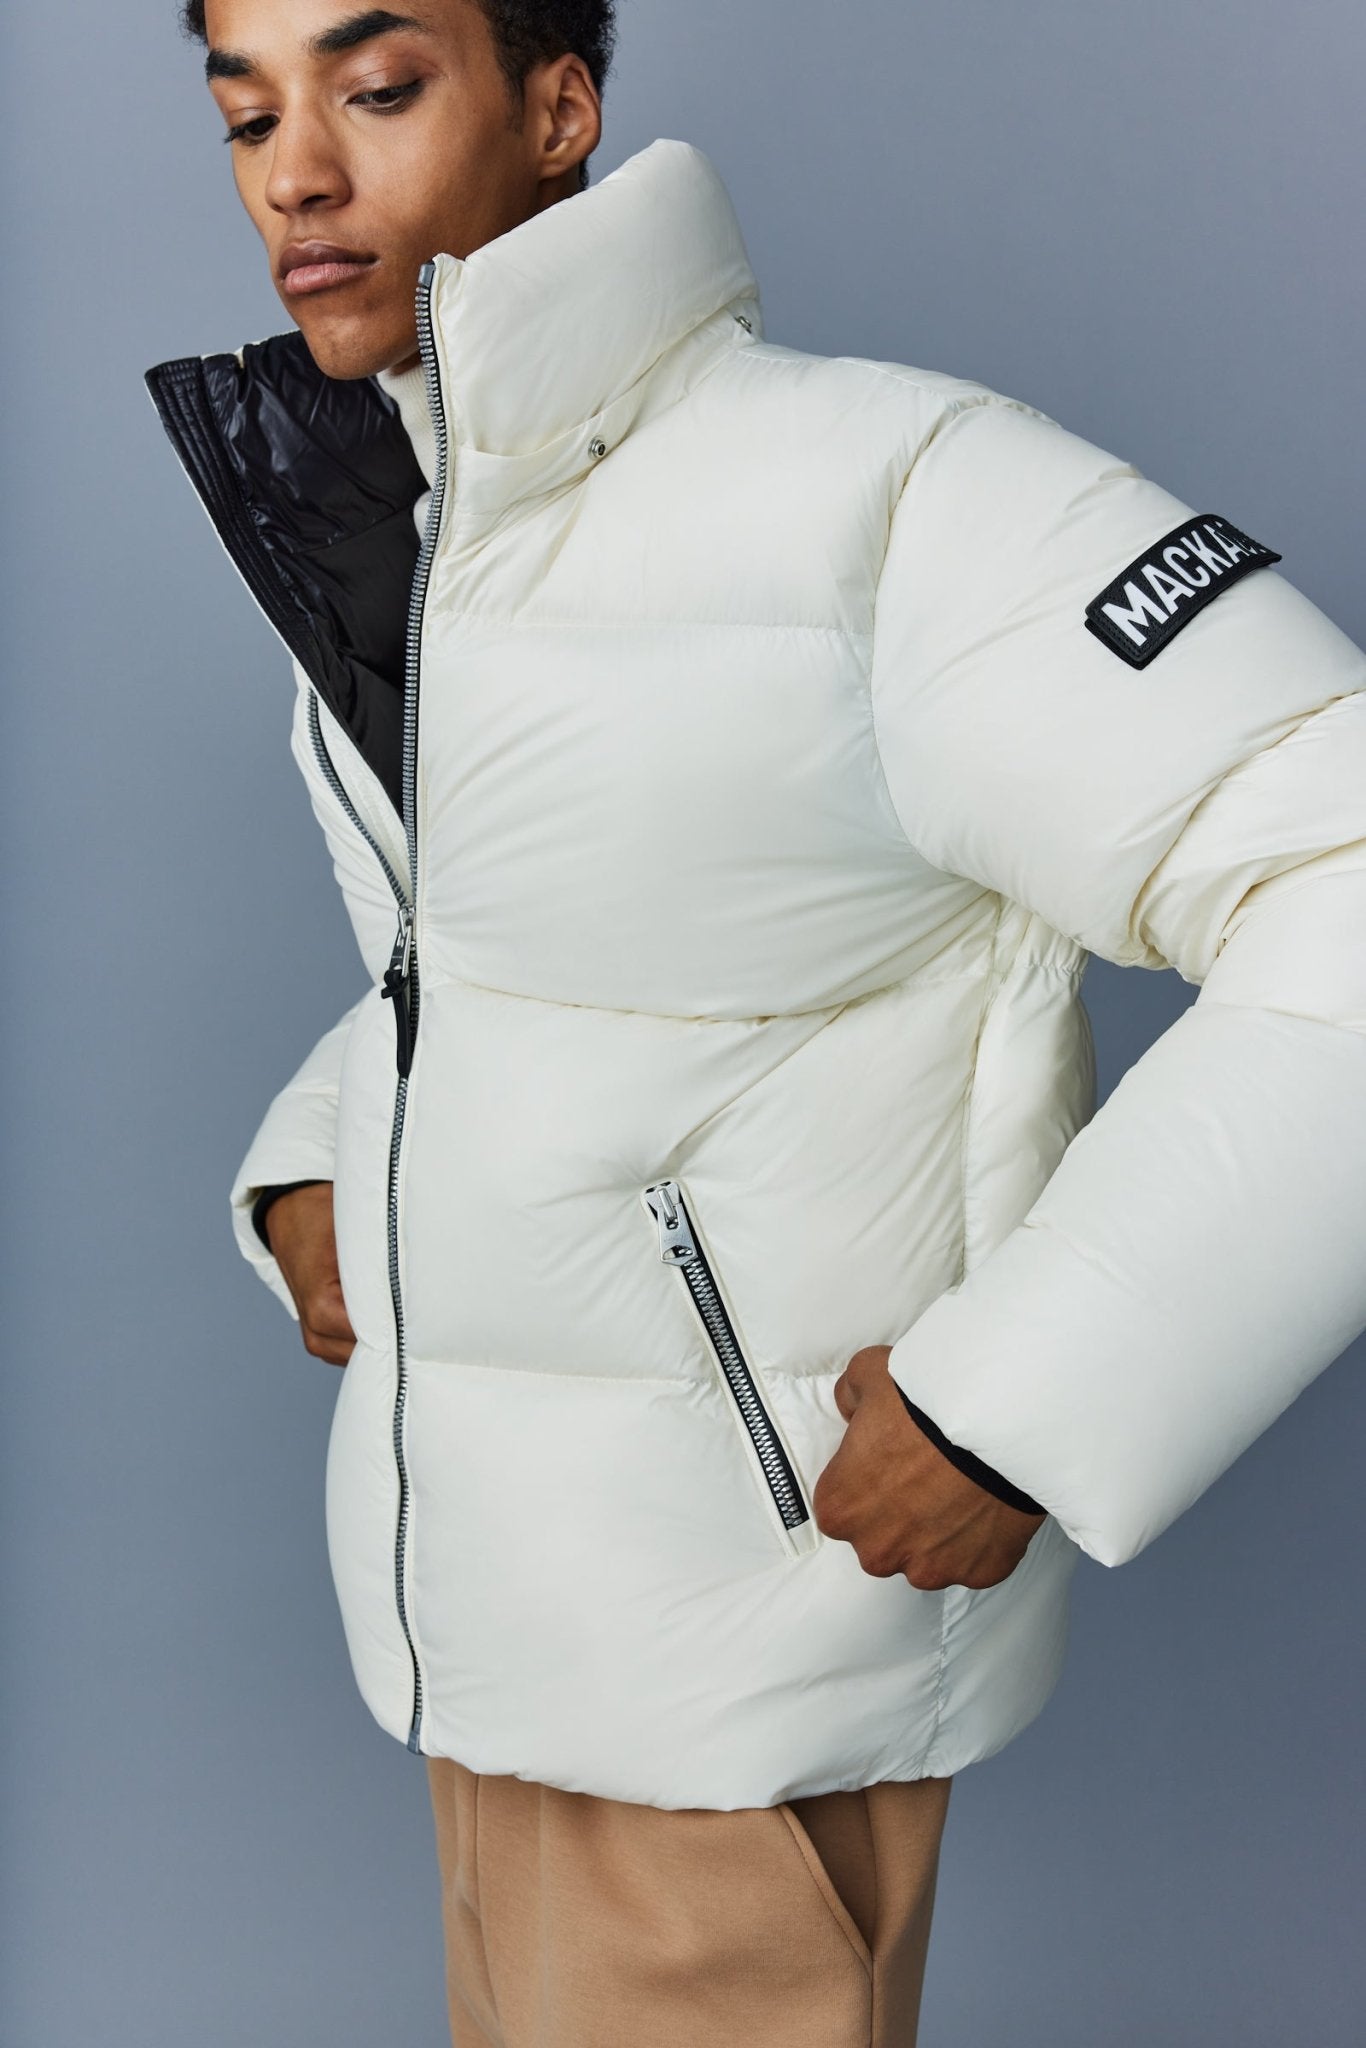 MACKAGE KENT-Z lustrous light down jacket with hood - Boutique Bubbles